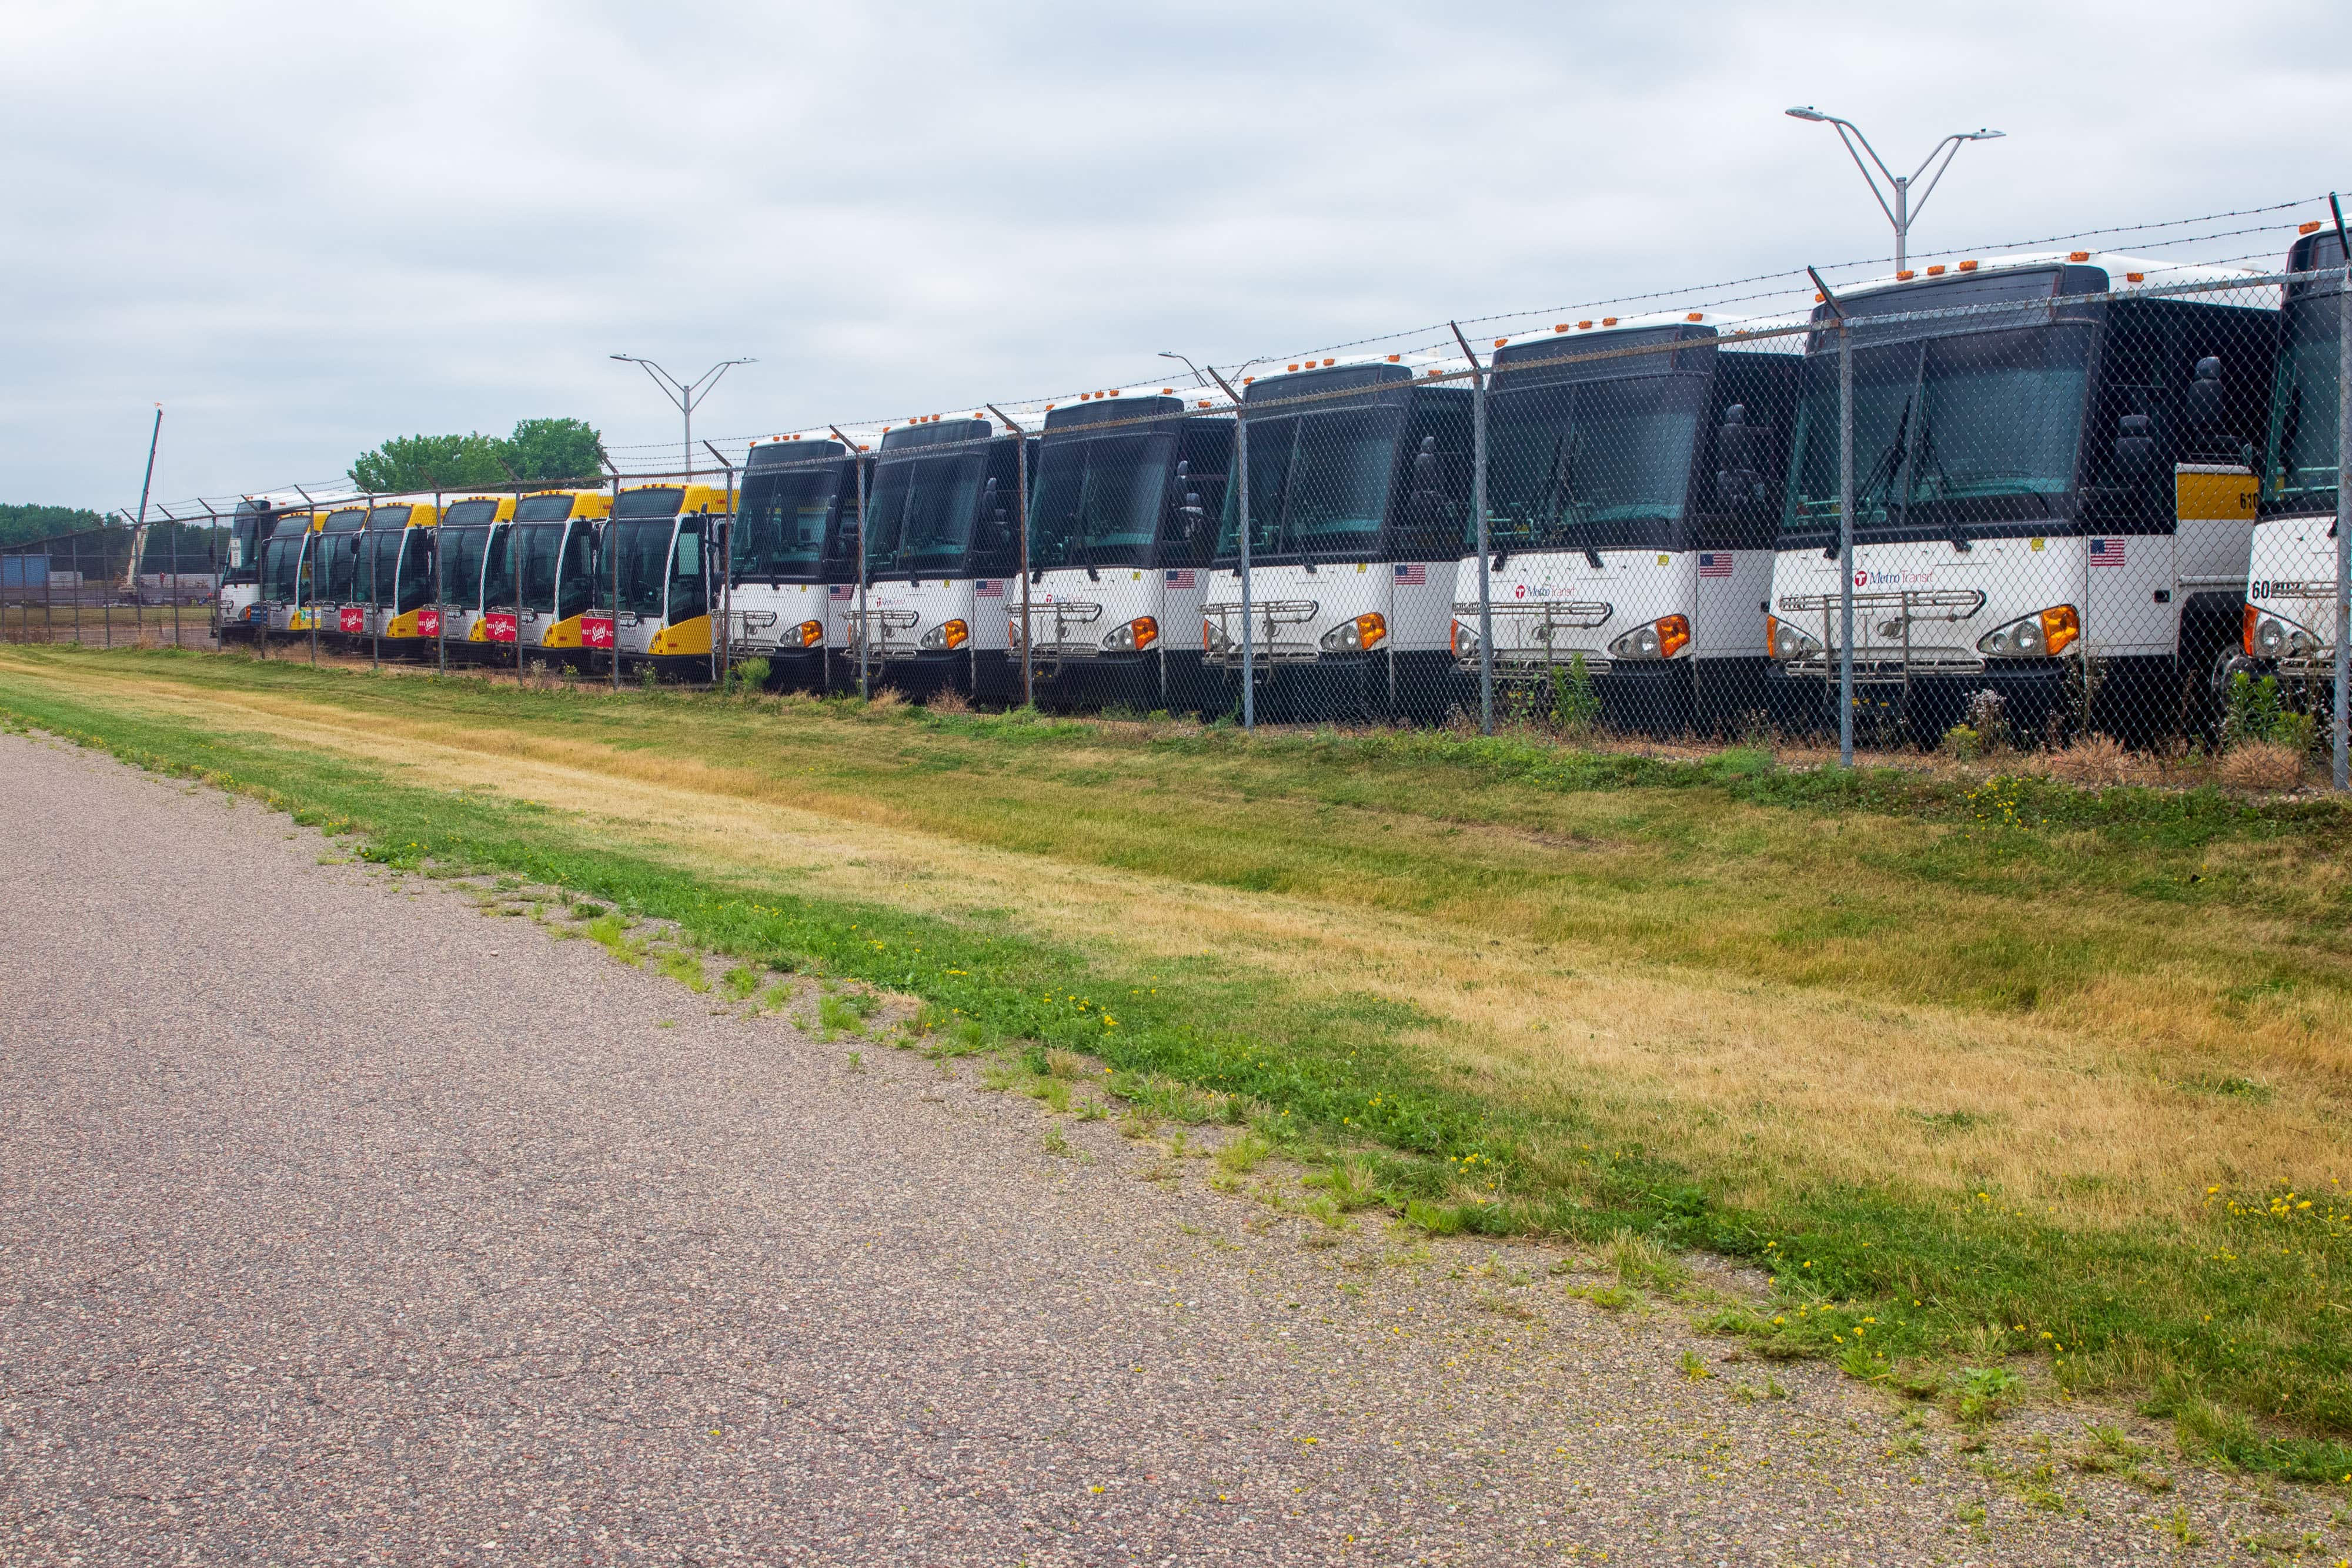 parked Metro Transit buses